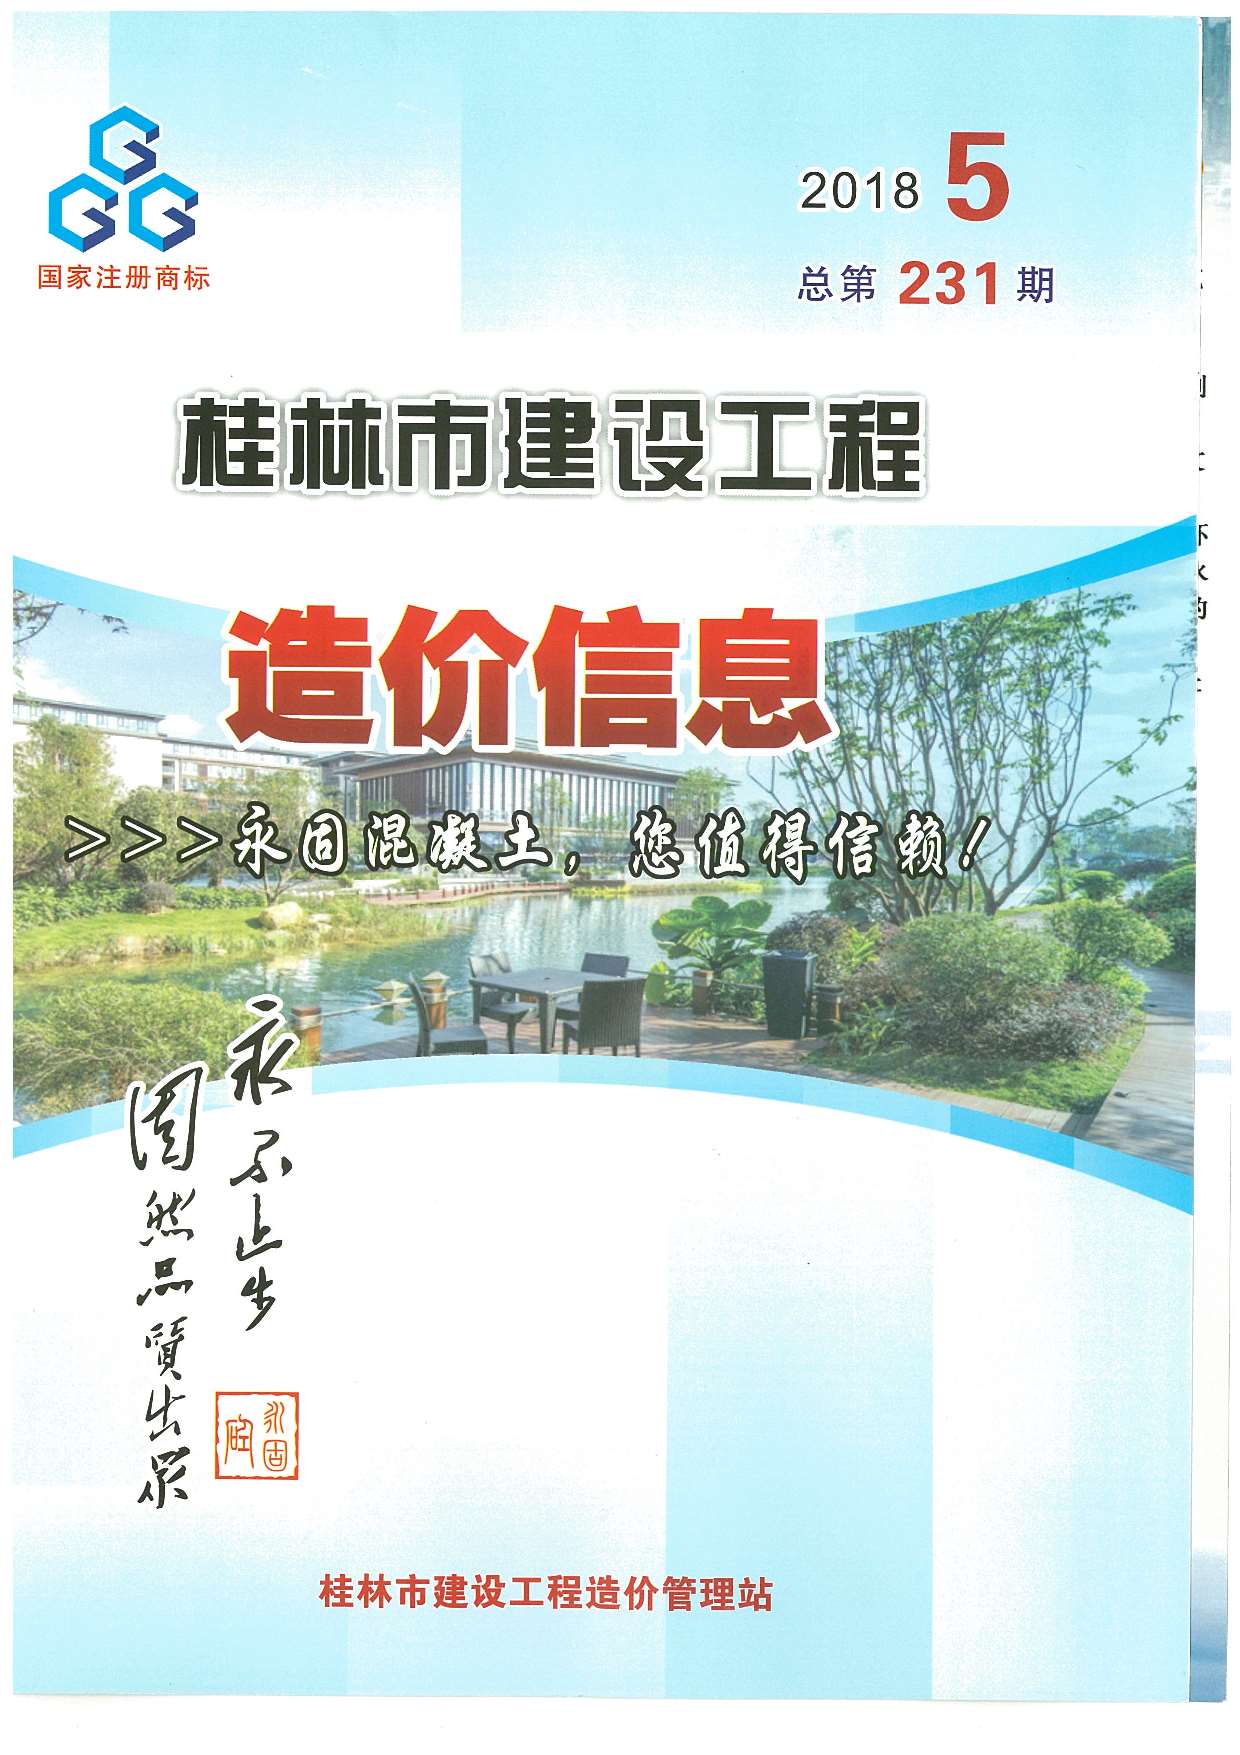 桂林市2018年5月建设工程造价信息造价库信息价